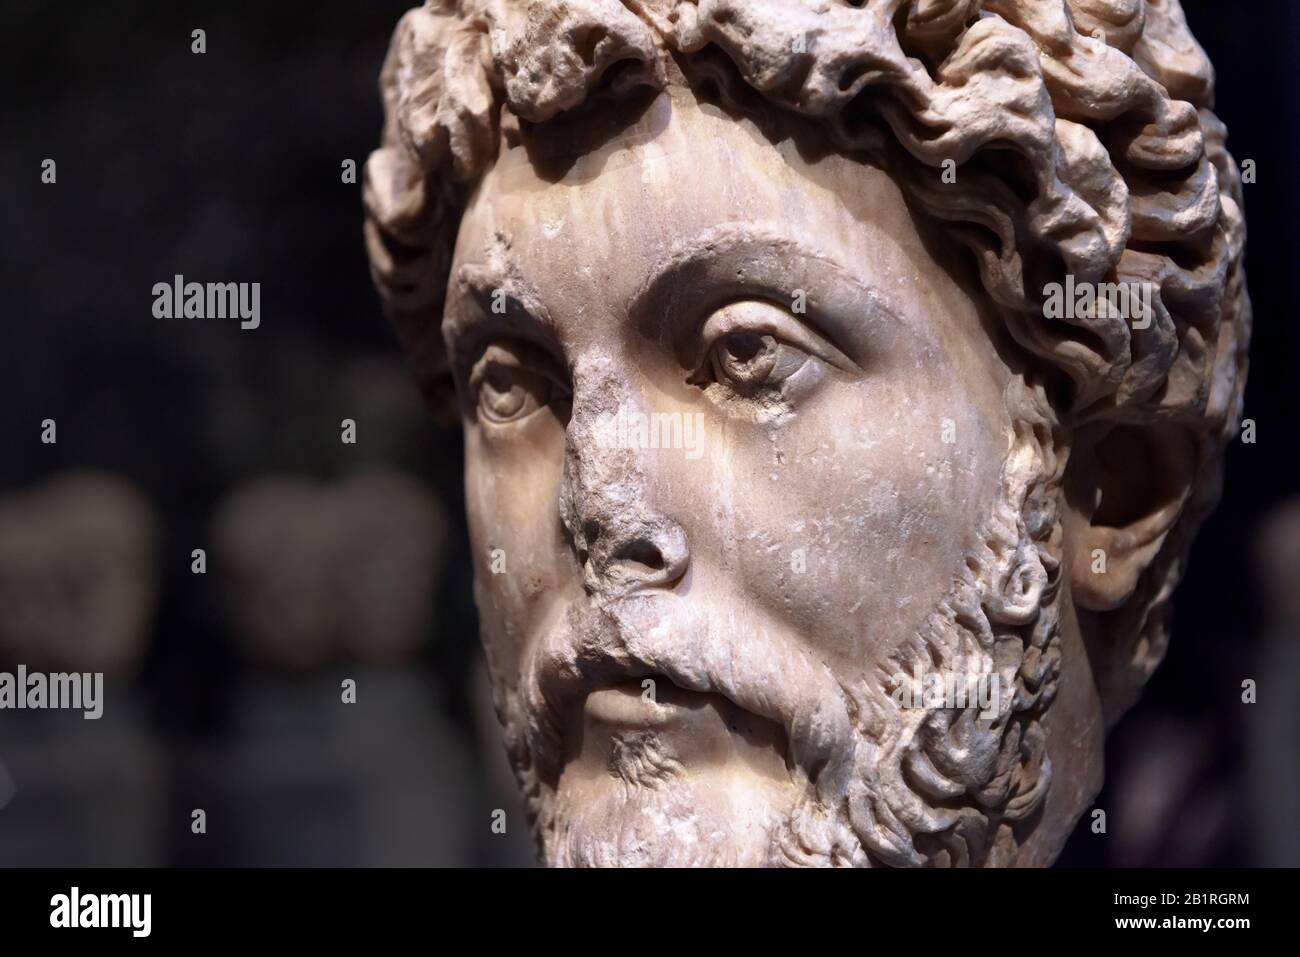 Head of Roman emperor Marcus Aurelius, detail of an ancient marble statue. Classic antique stone sculpture. Caesar Marcus Aurelius, called the Philoso Stock Photo